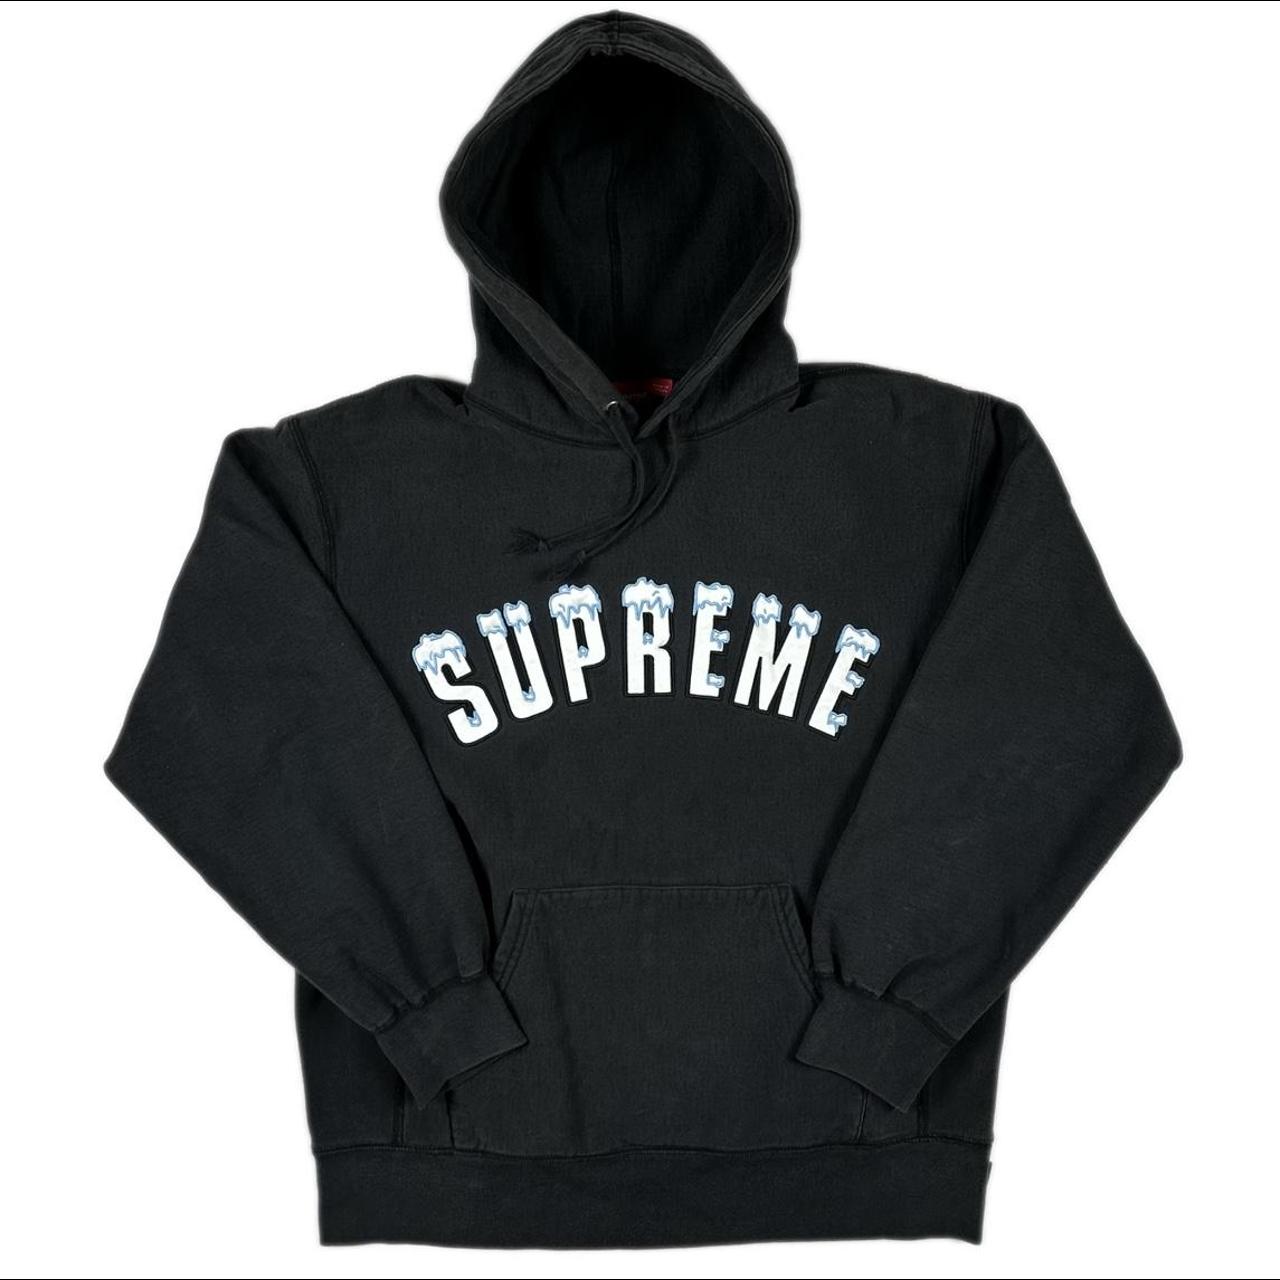 Supreme Icy Arc hooded sweatshirt FW20 black Good... - Depop